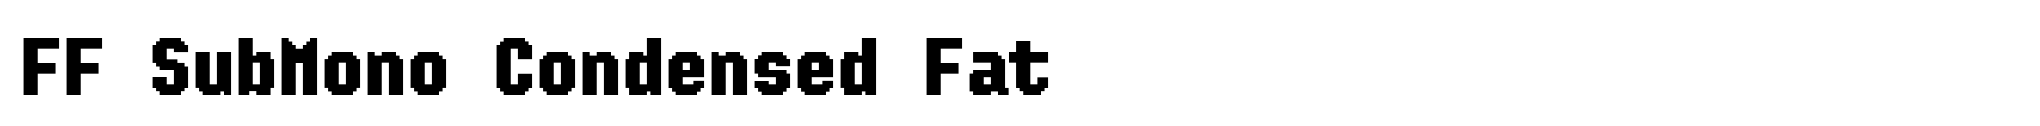 FF SubMono Condensed Fat image